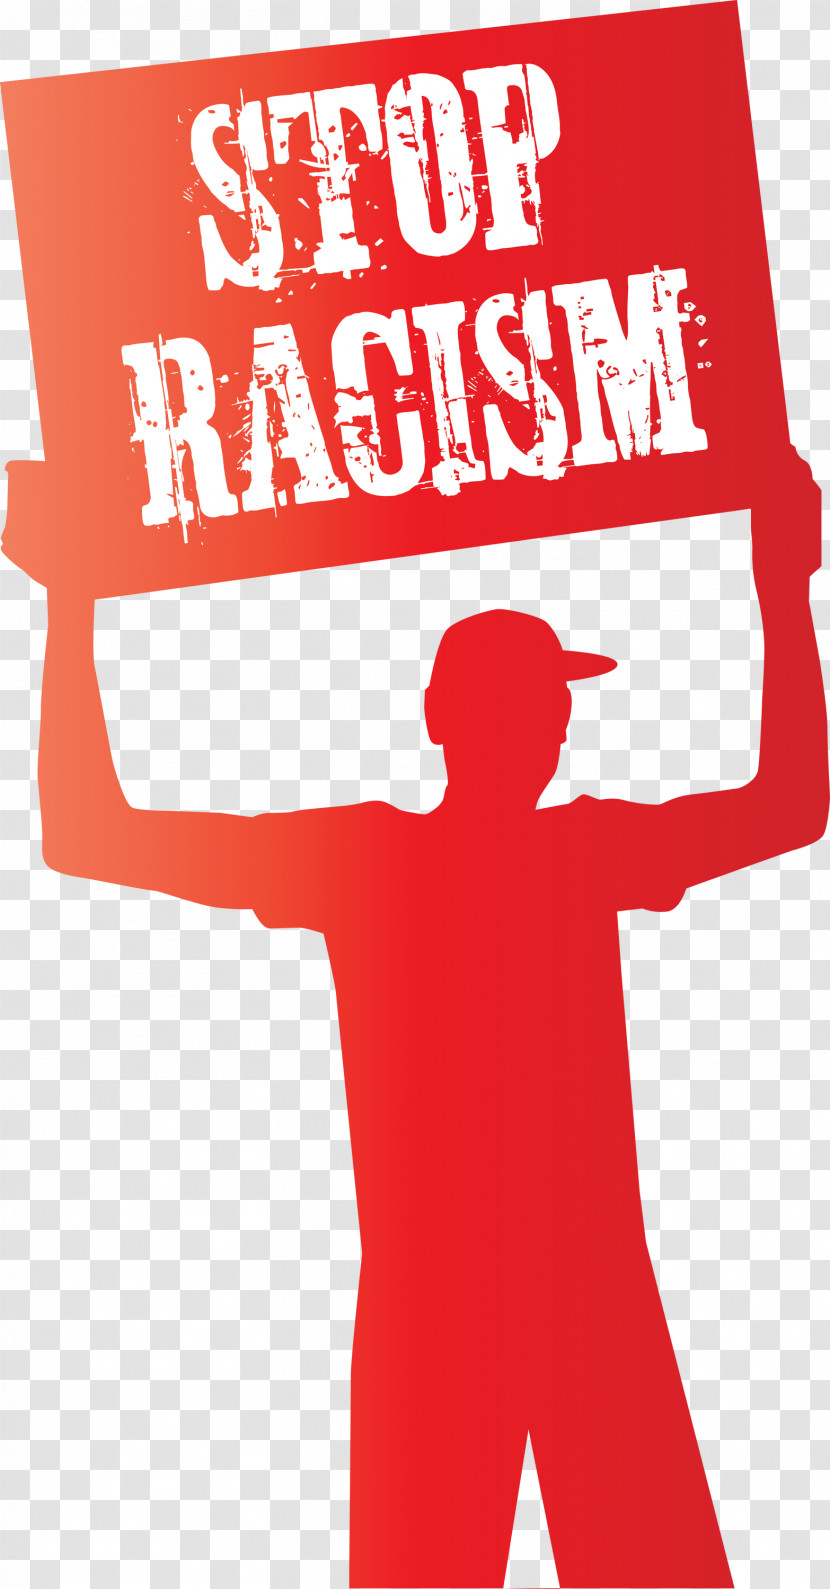 STOP RACISM Transparent PNG